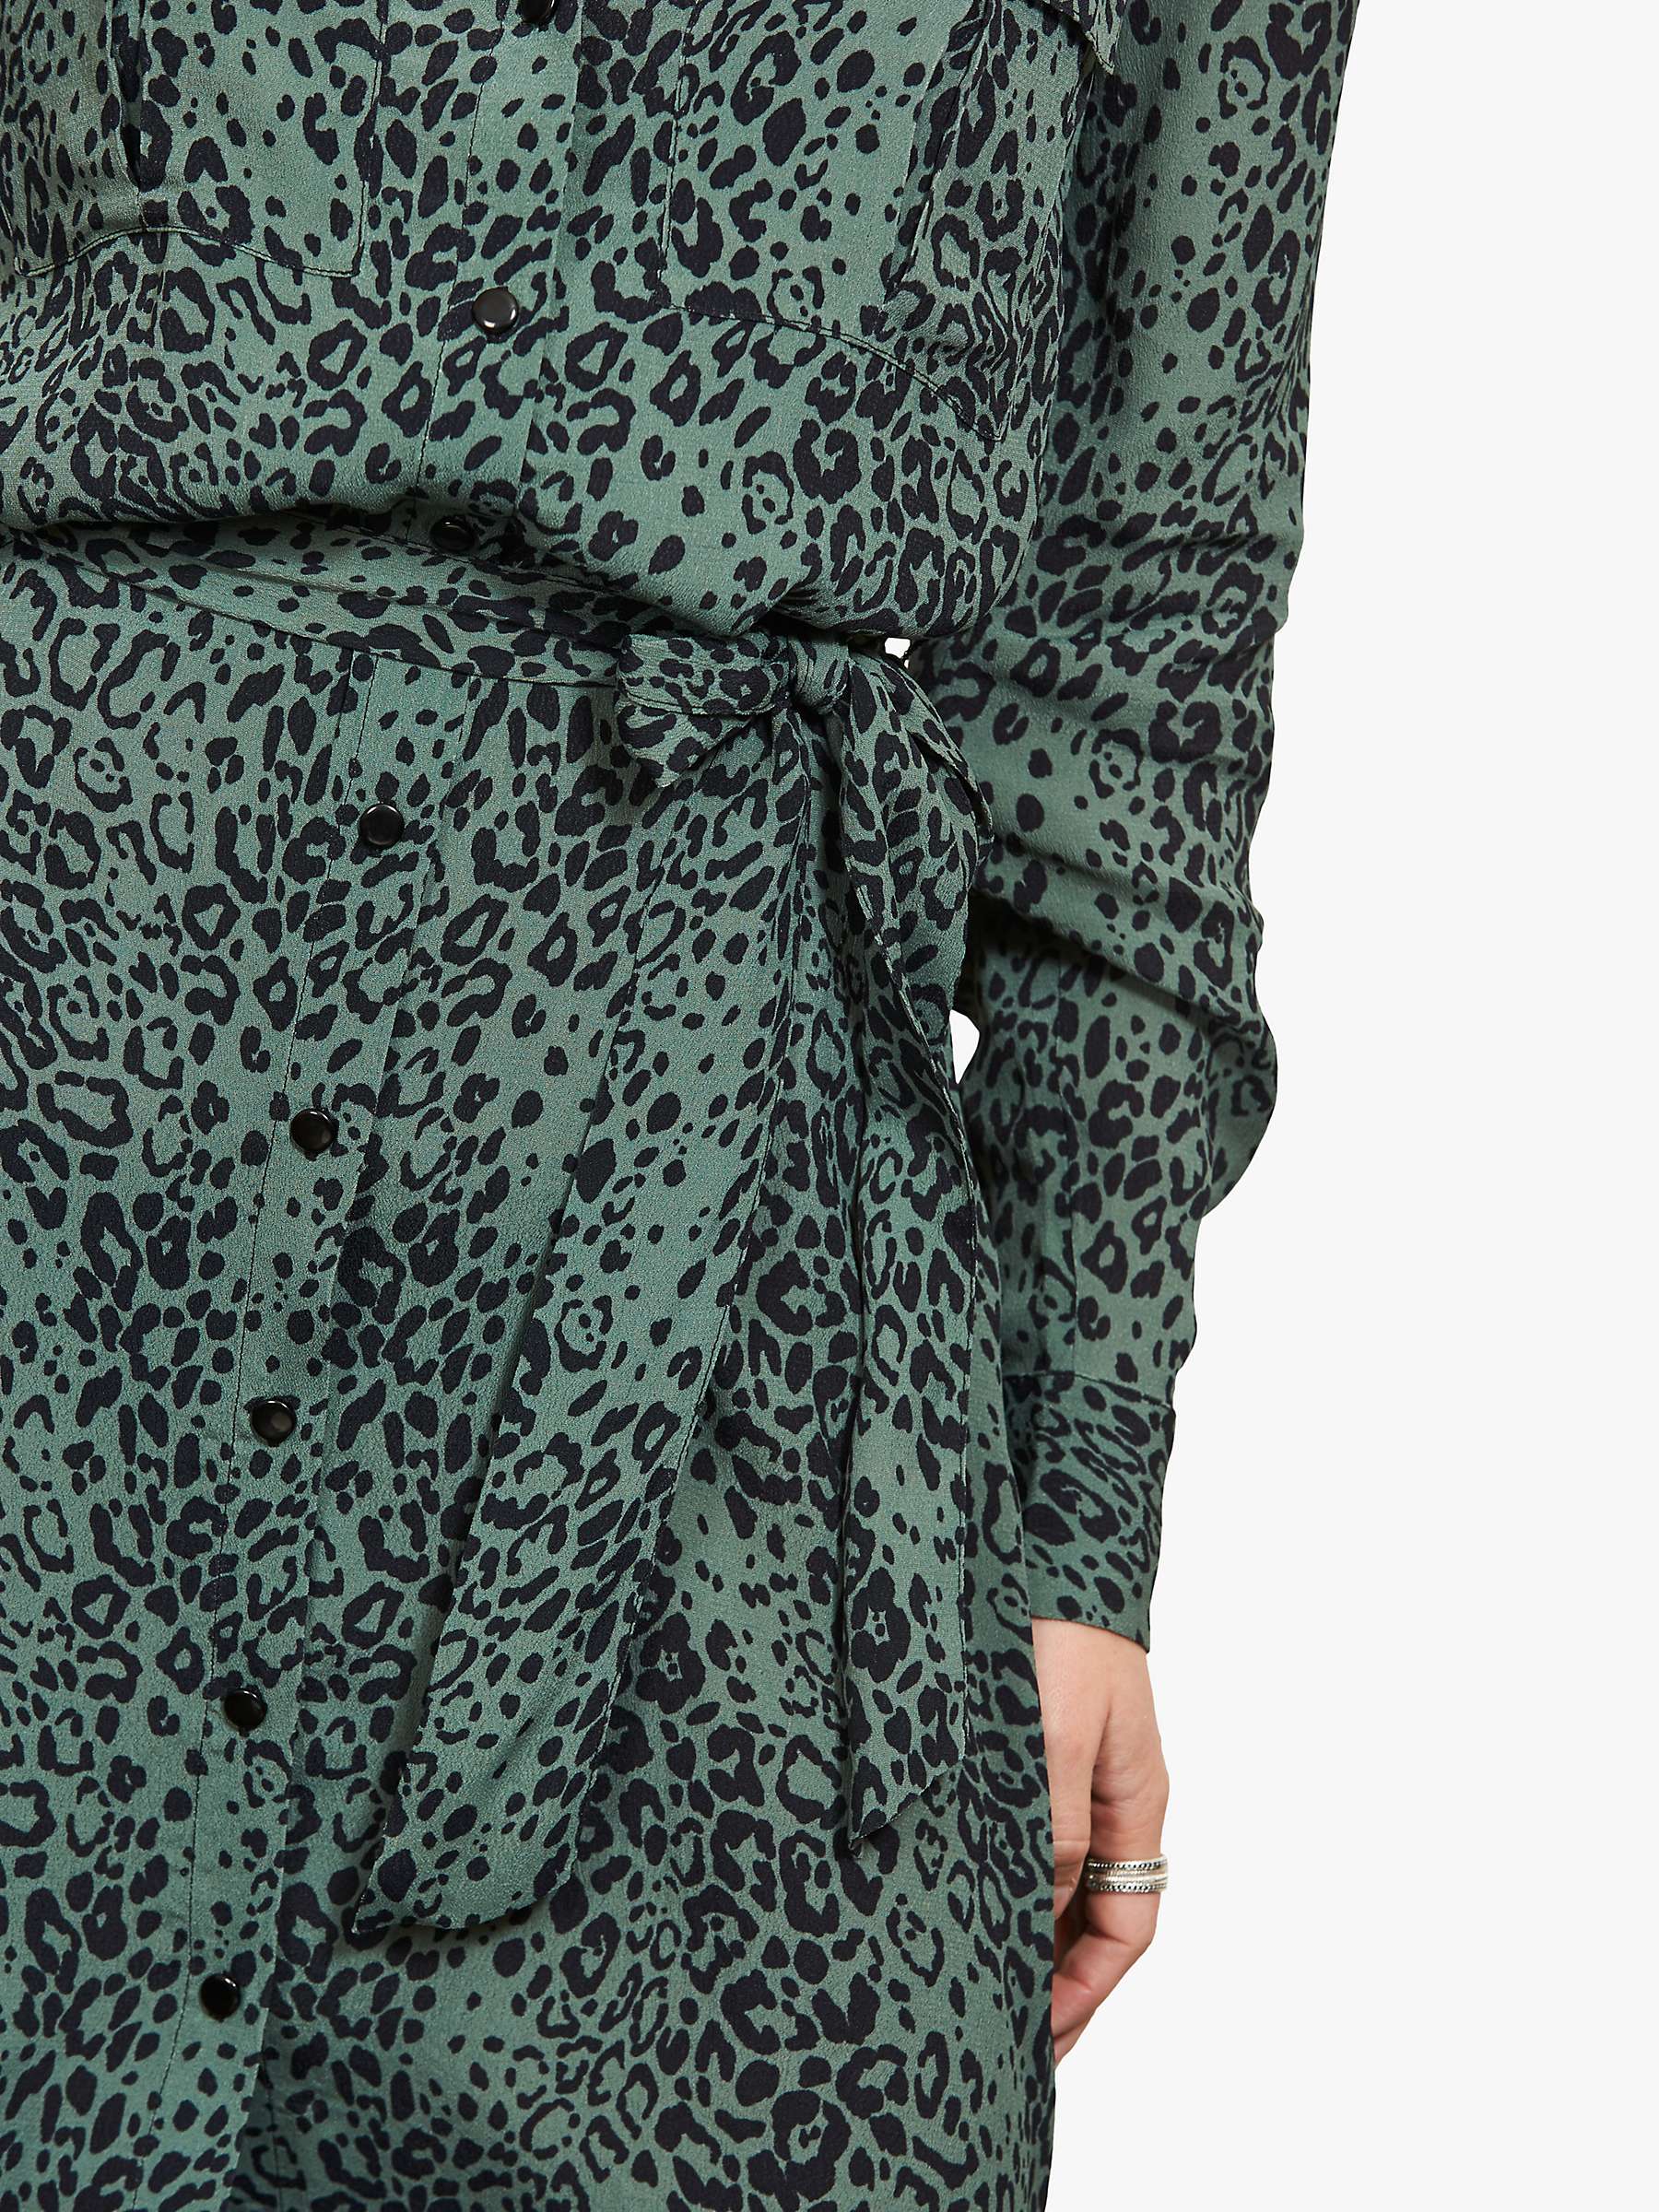 Sosandar Leopard Shirt Dress, Green ...